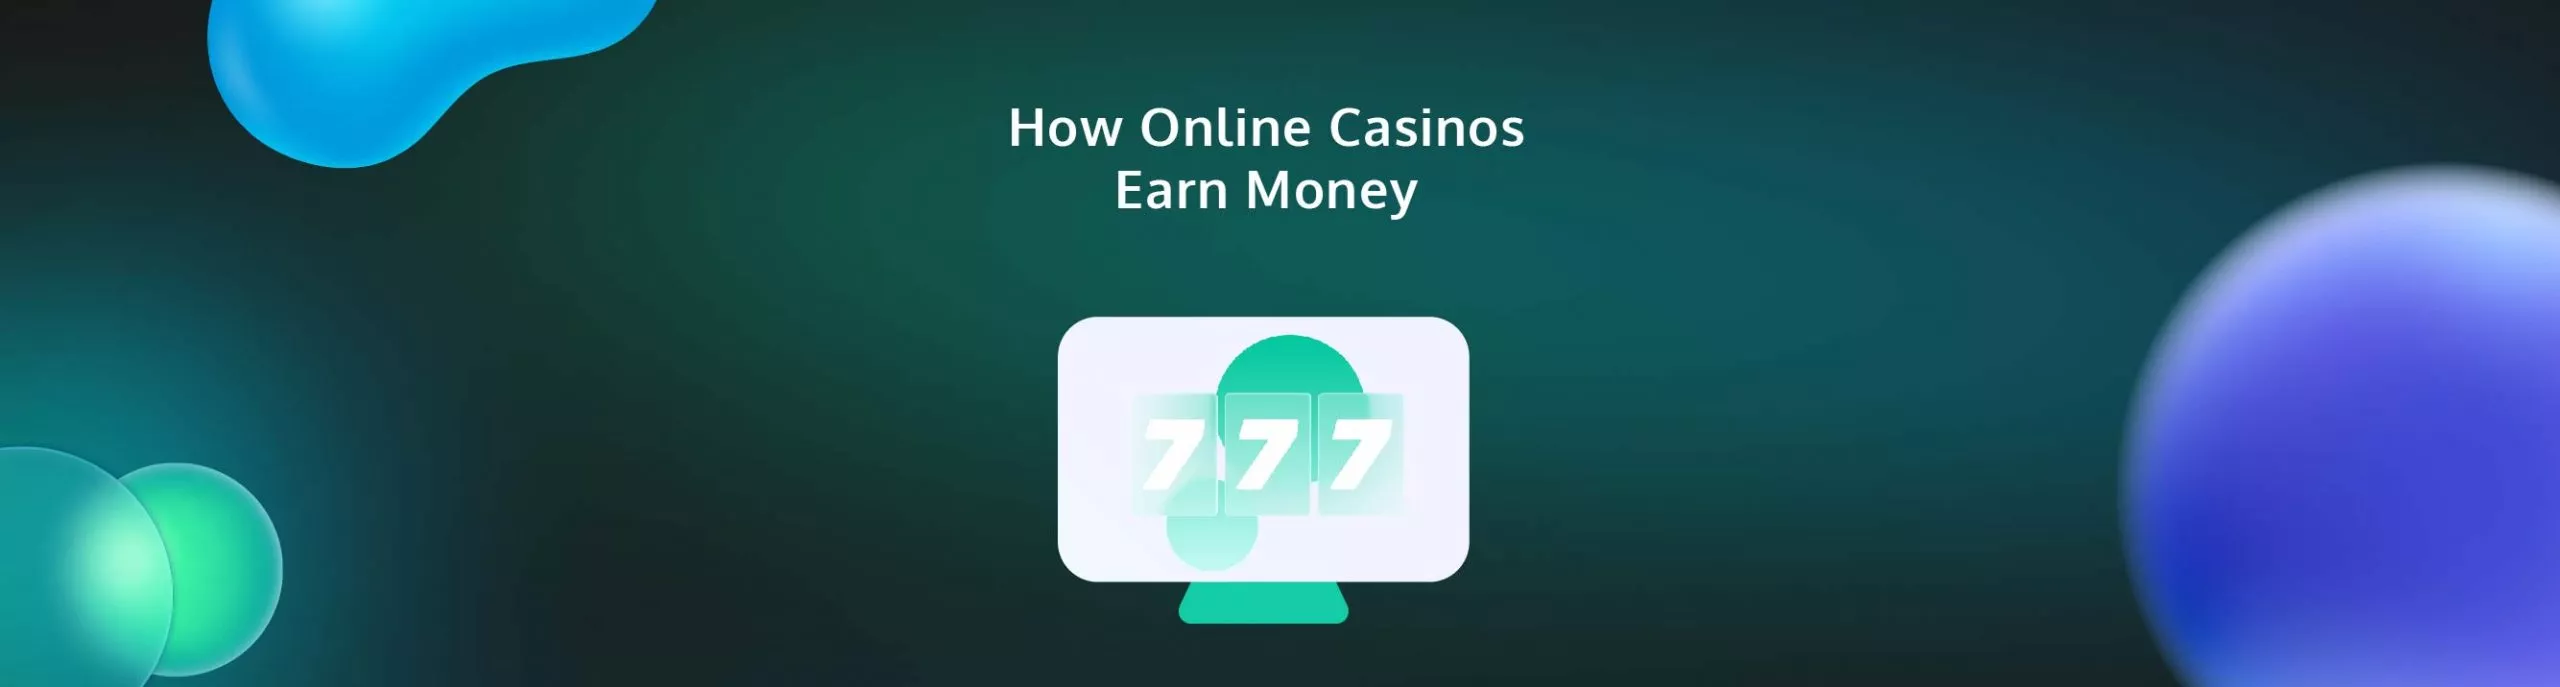 How Online Casinos Earn Money